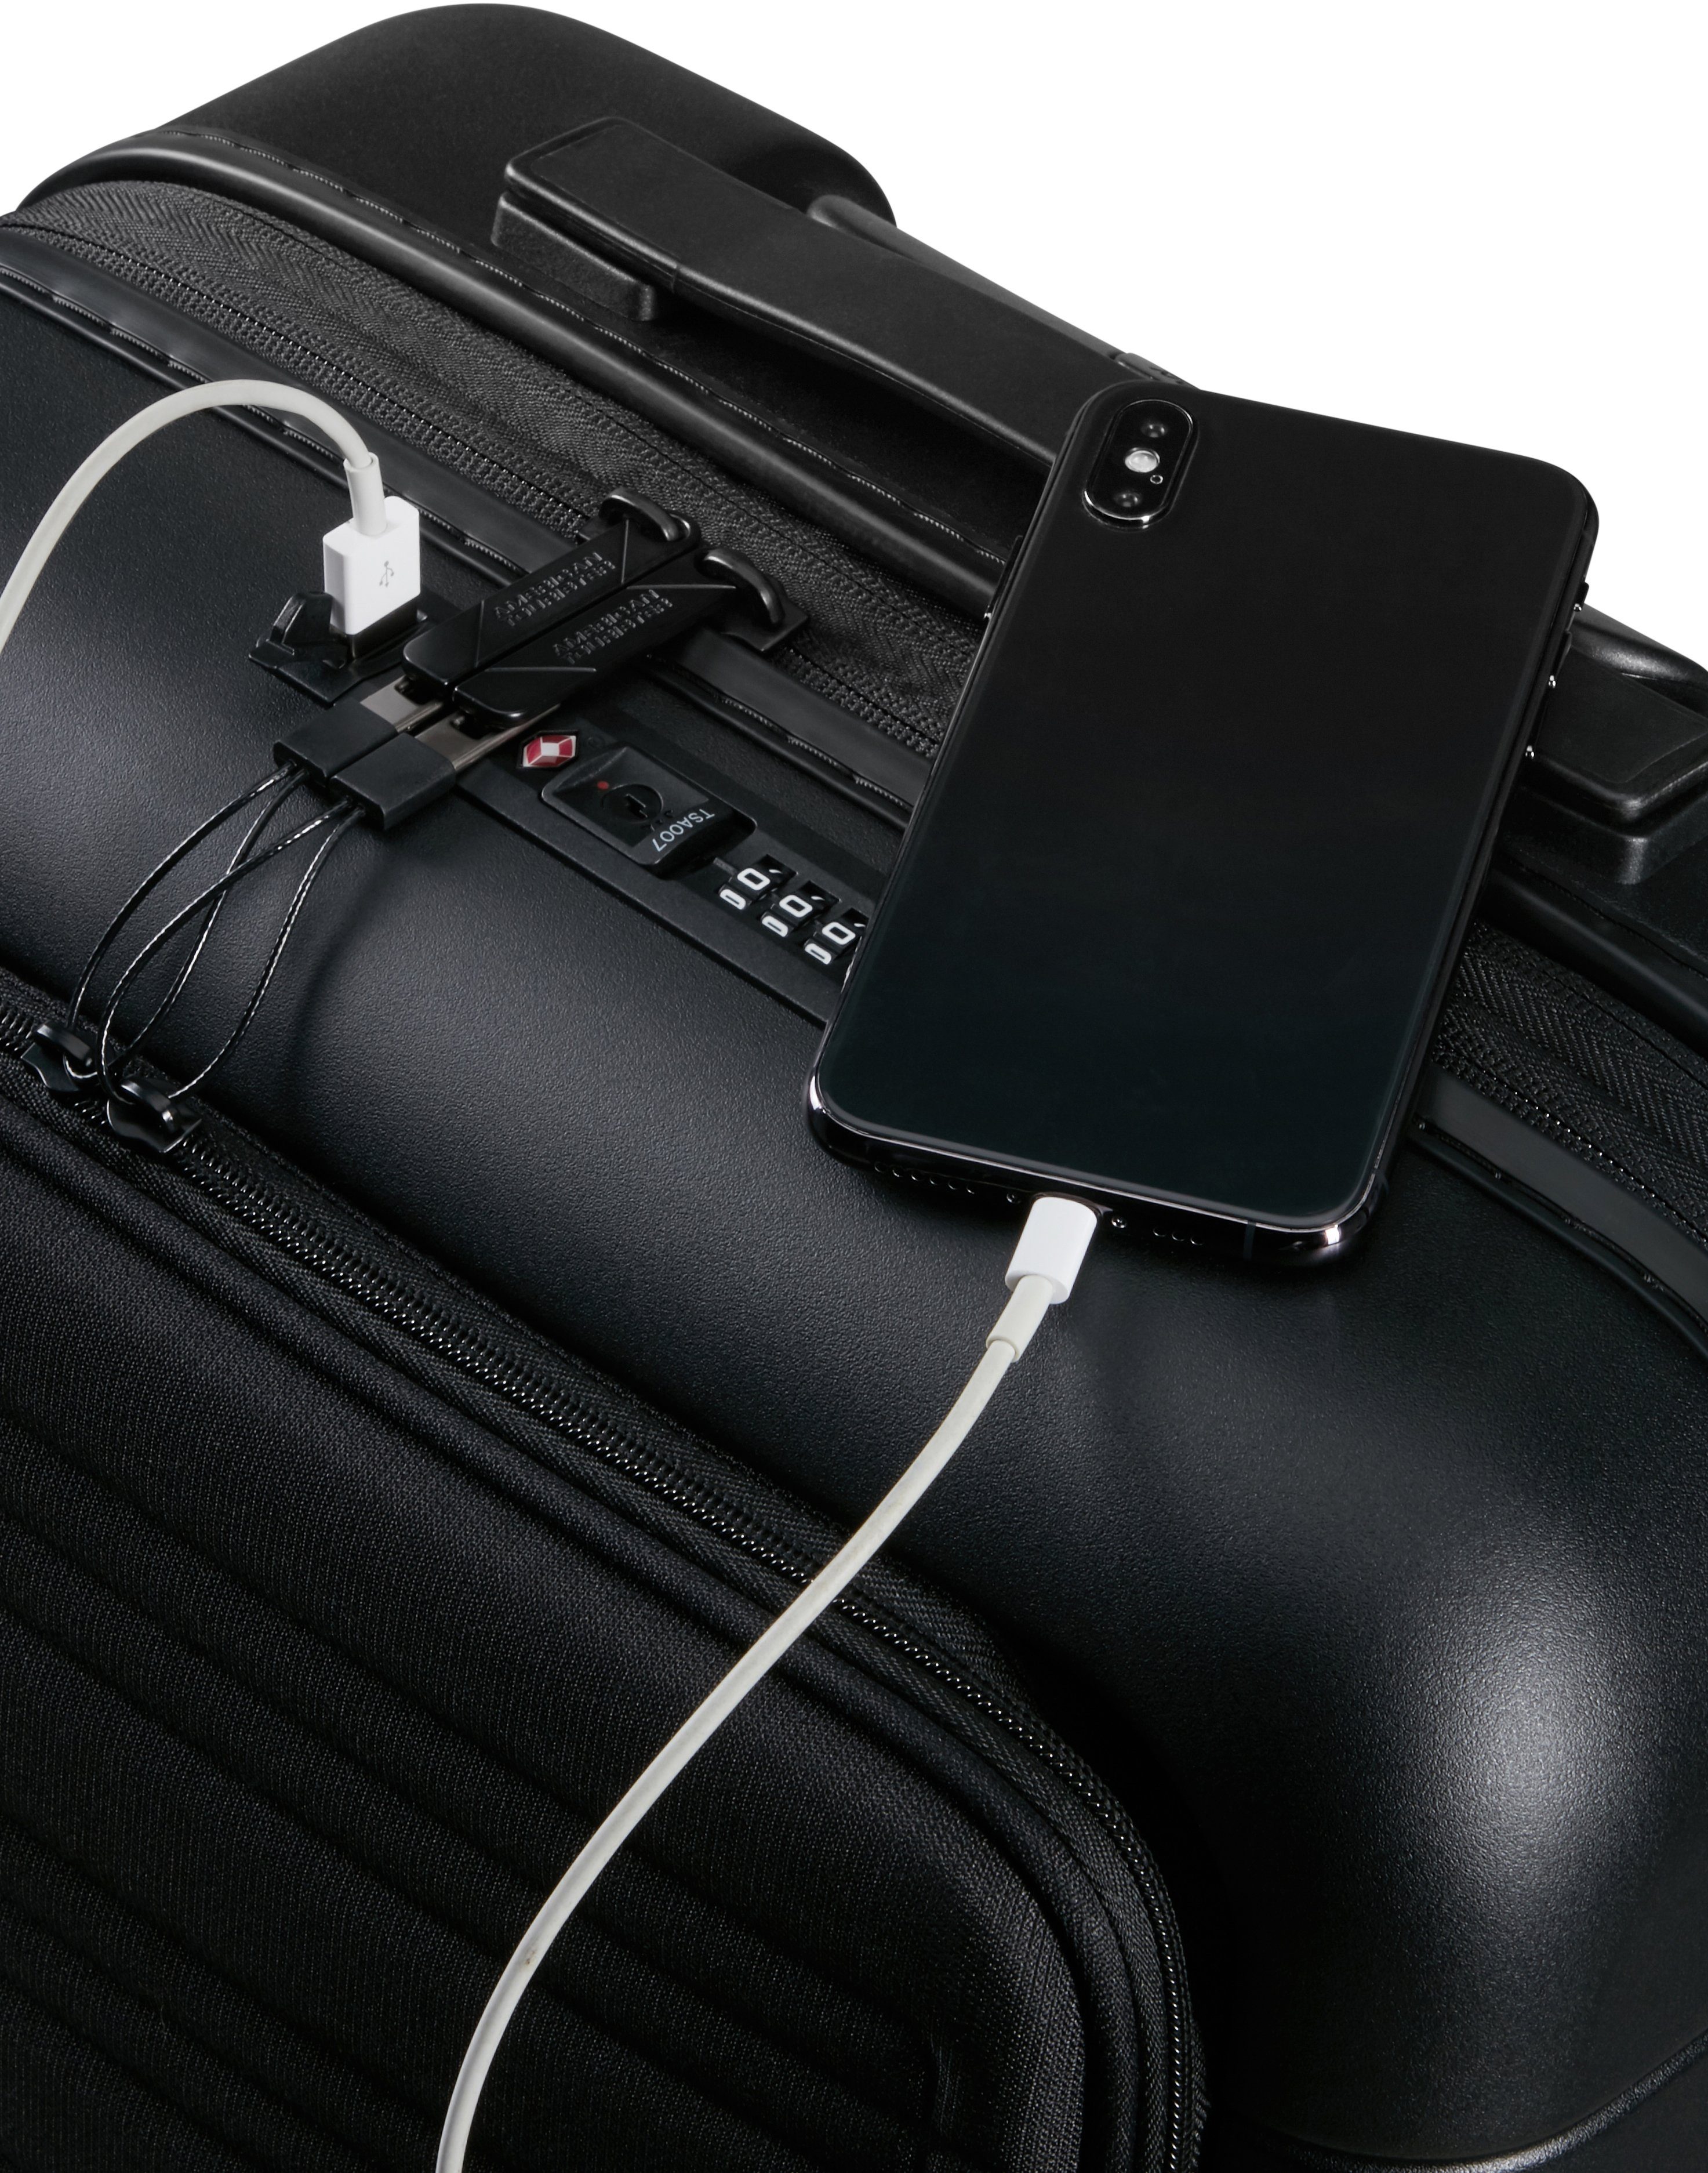 American Tourister® Novastream smart, Slate cm, Volumenerweiterung Dark mit USB-Schleuse Hartschalen-Trolley 55 und